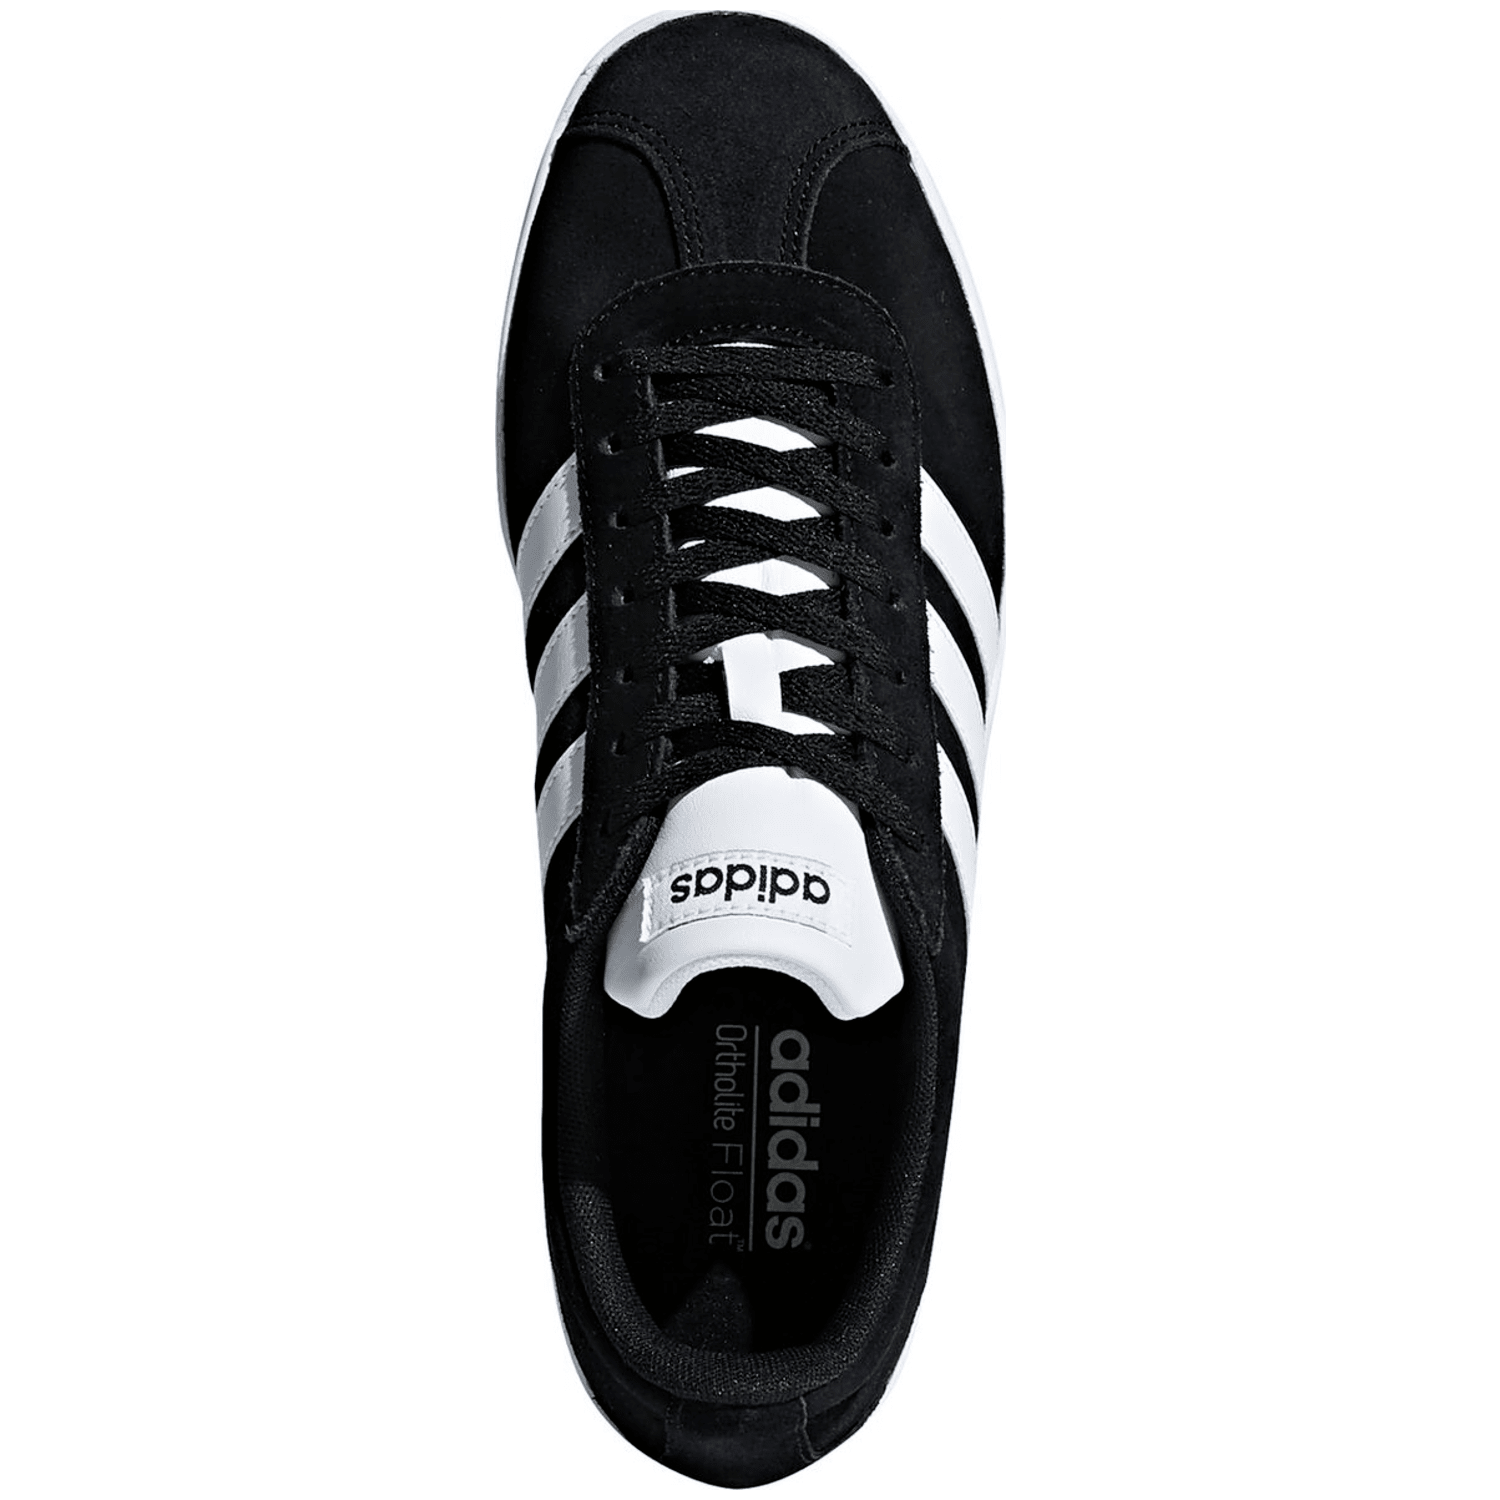 Adidas VL Court 2.0 Schuh Herren